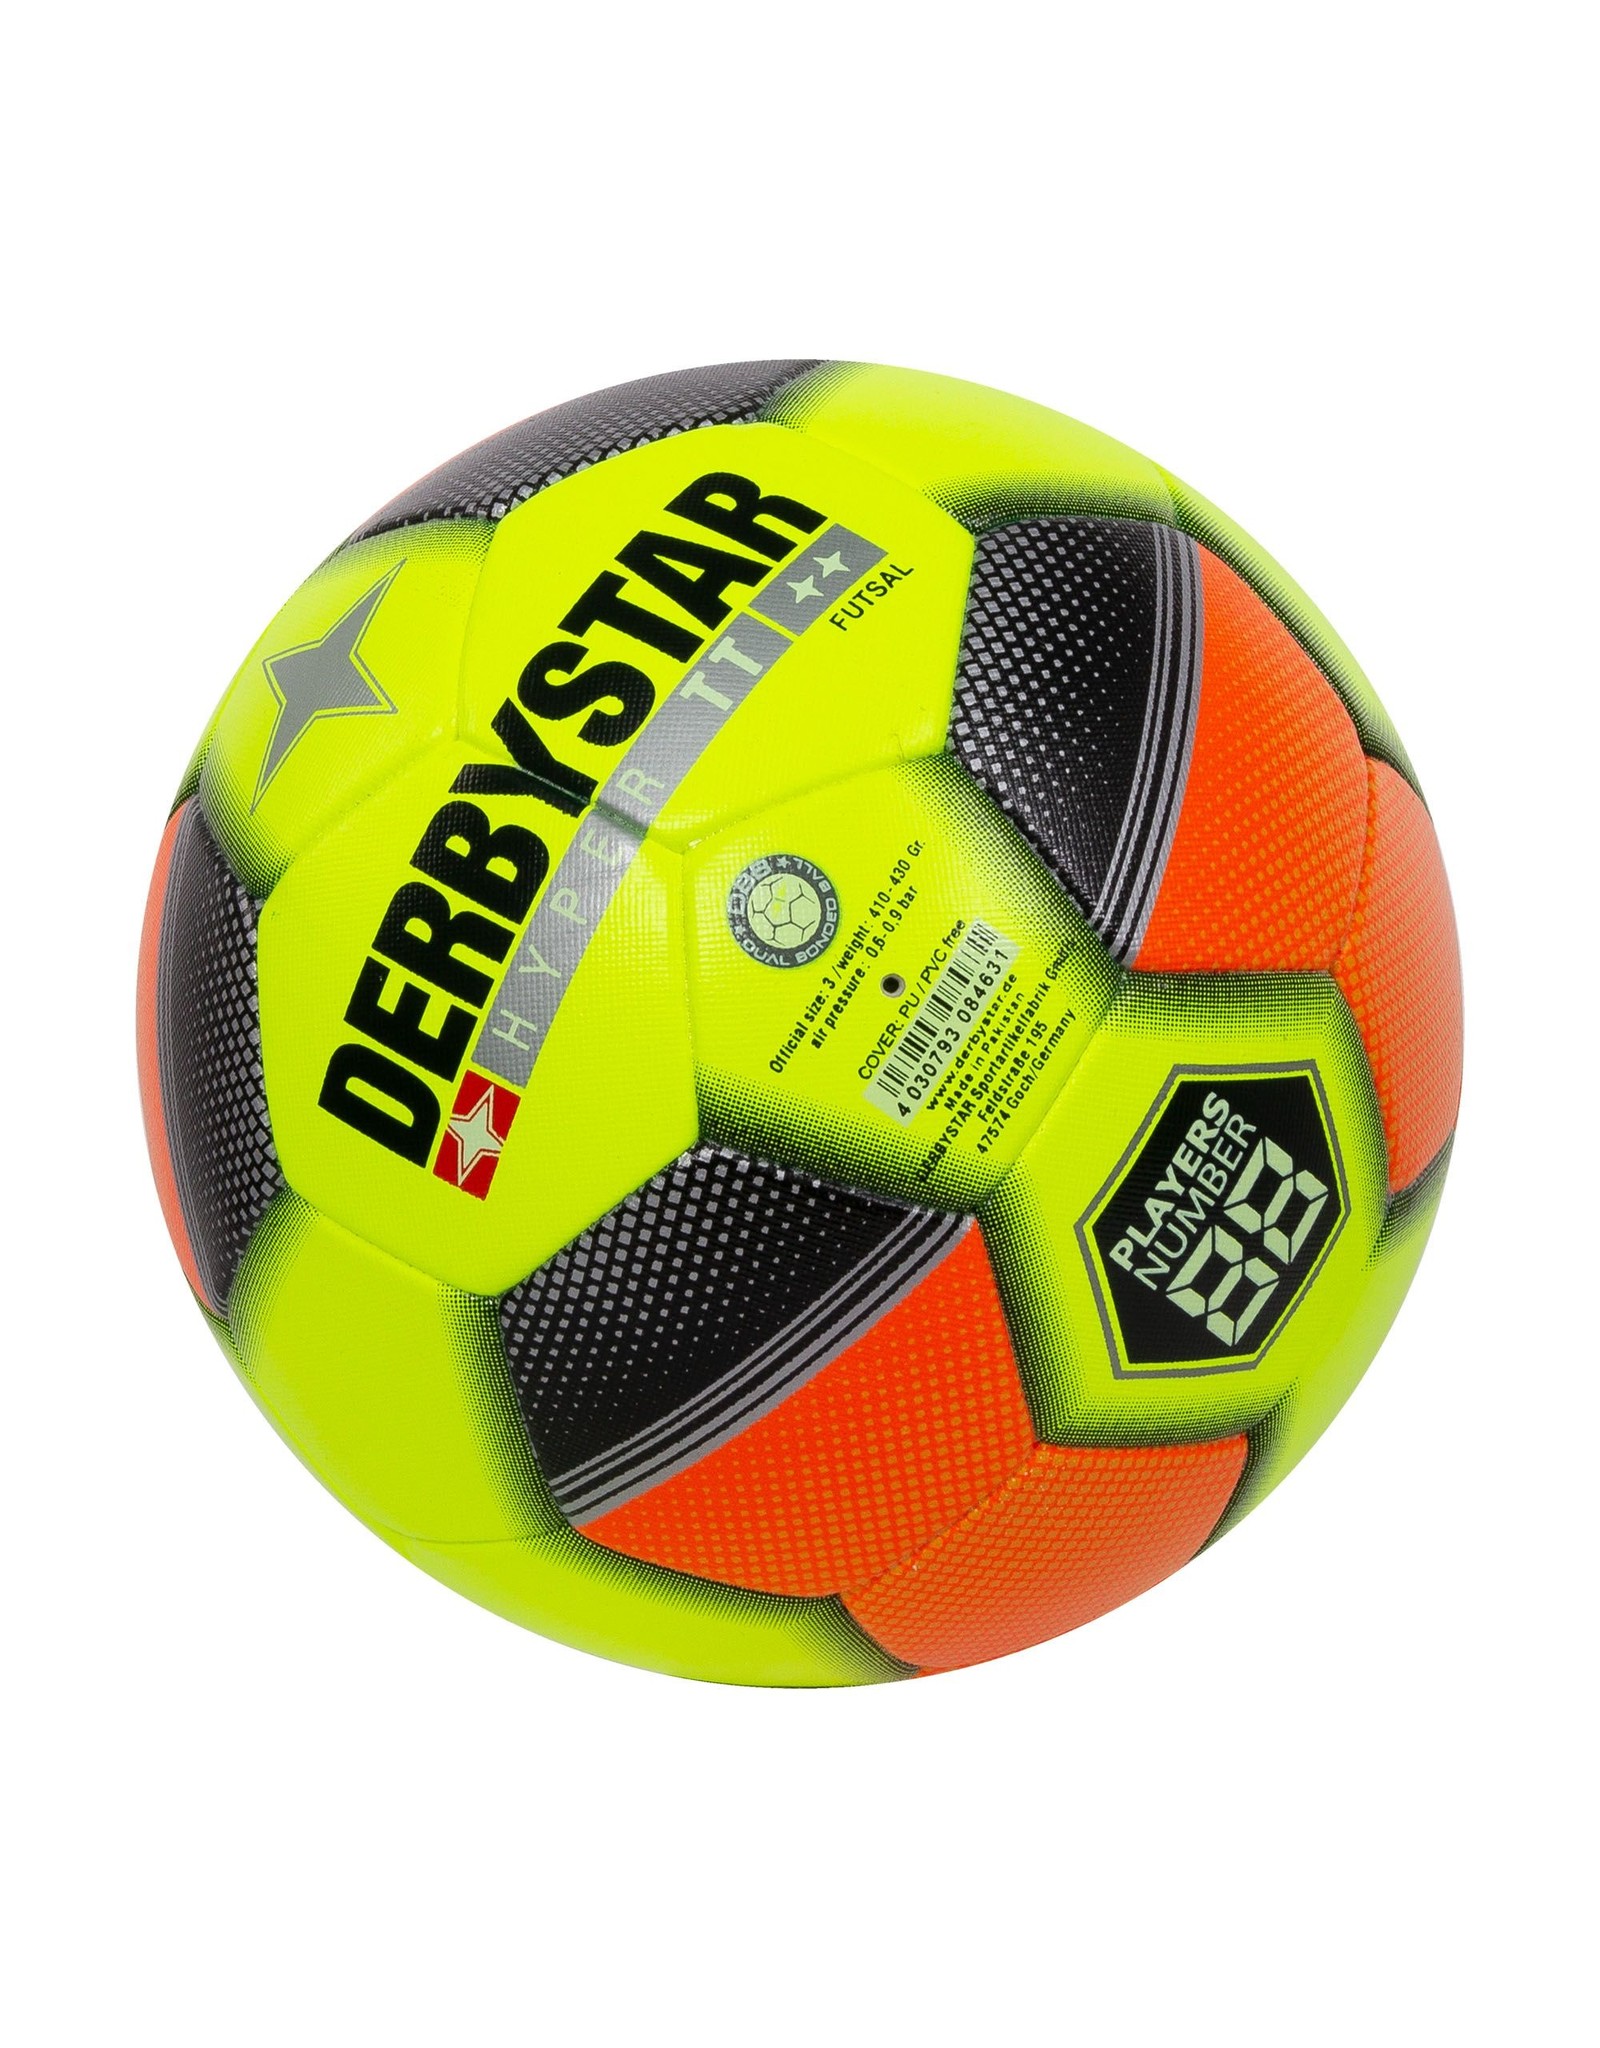 Derbystar Futsal Hyper TT-Yellow - Orange